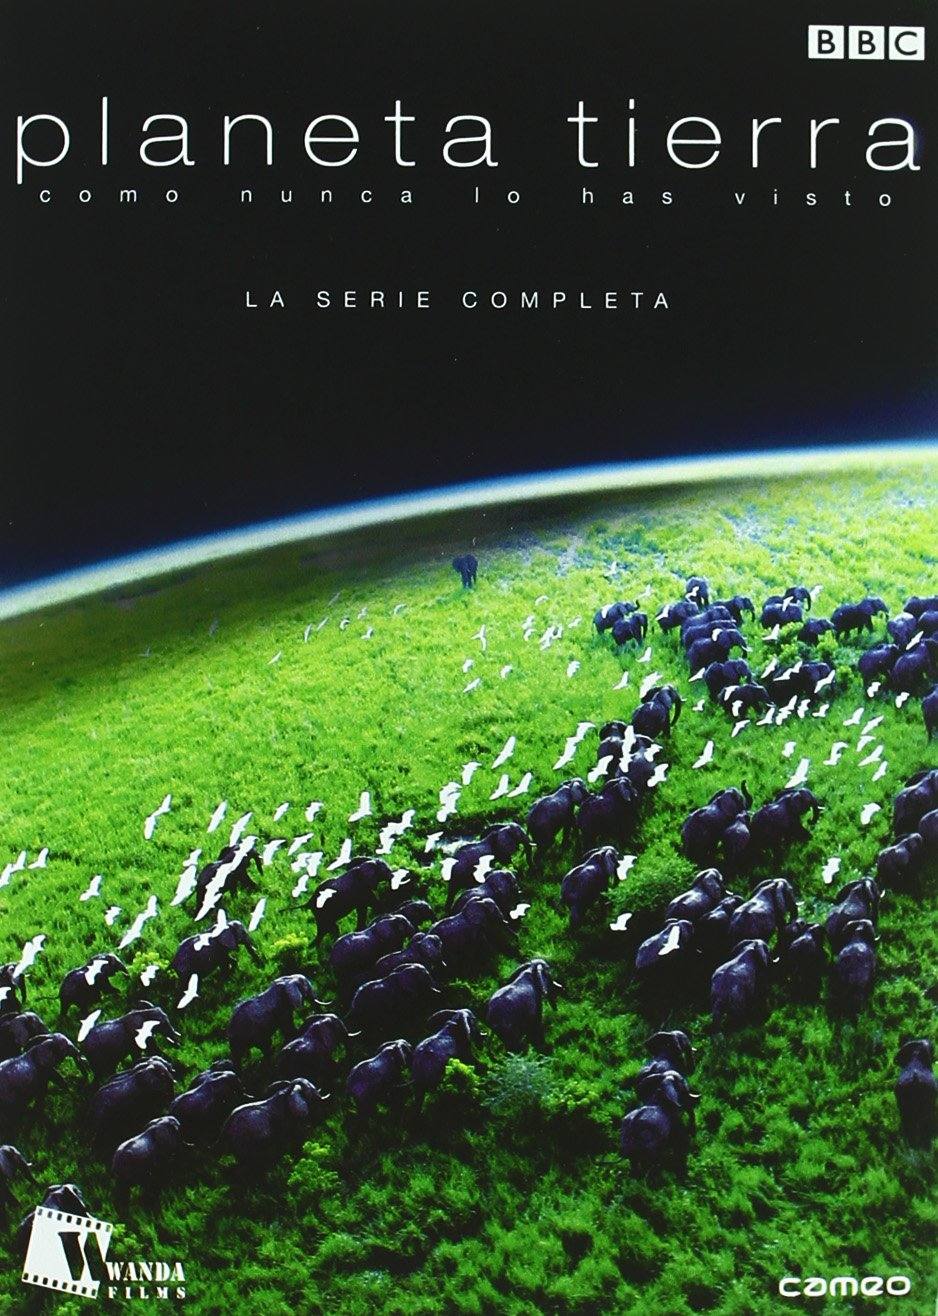 Planeta Tierra (2006). El documental de naturaleza más caro de la historia de la BBC, guiado por el naturalista David Attenborough.  Nota IMDb: 9,4 .